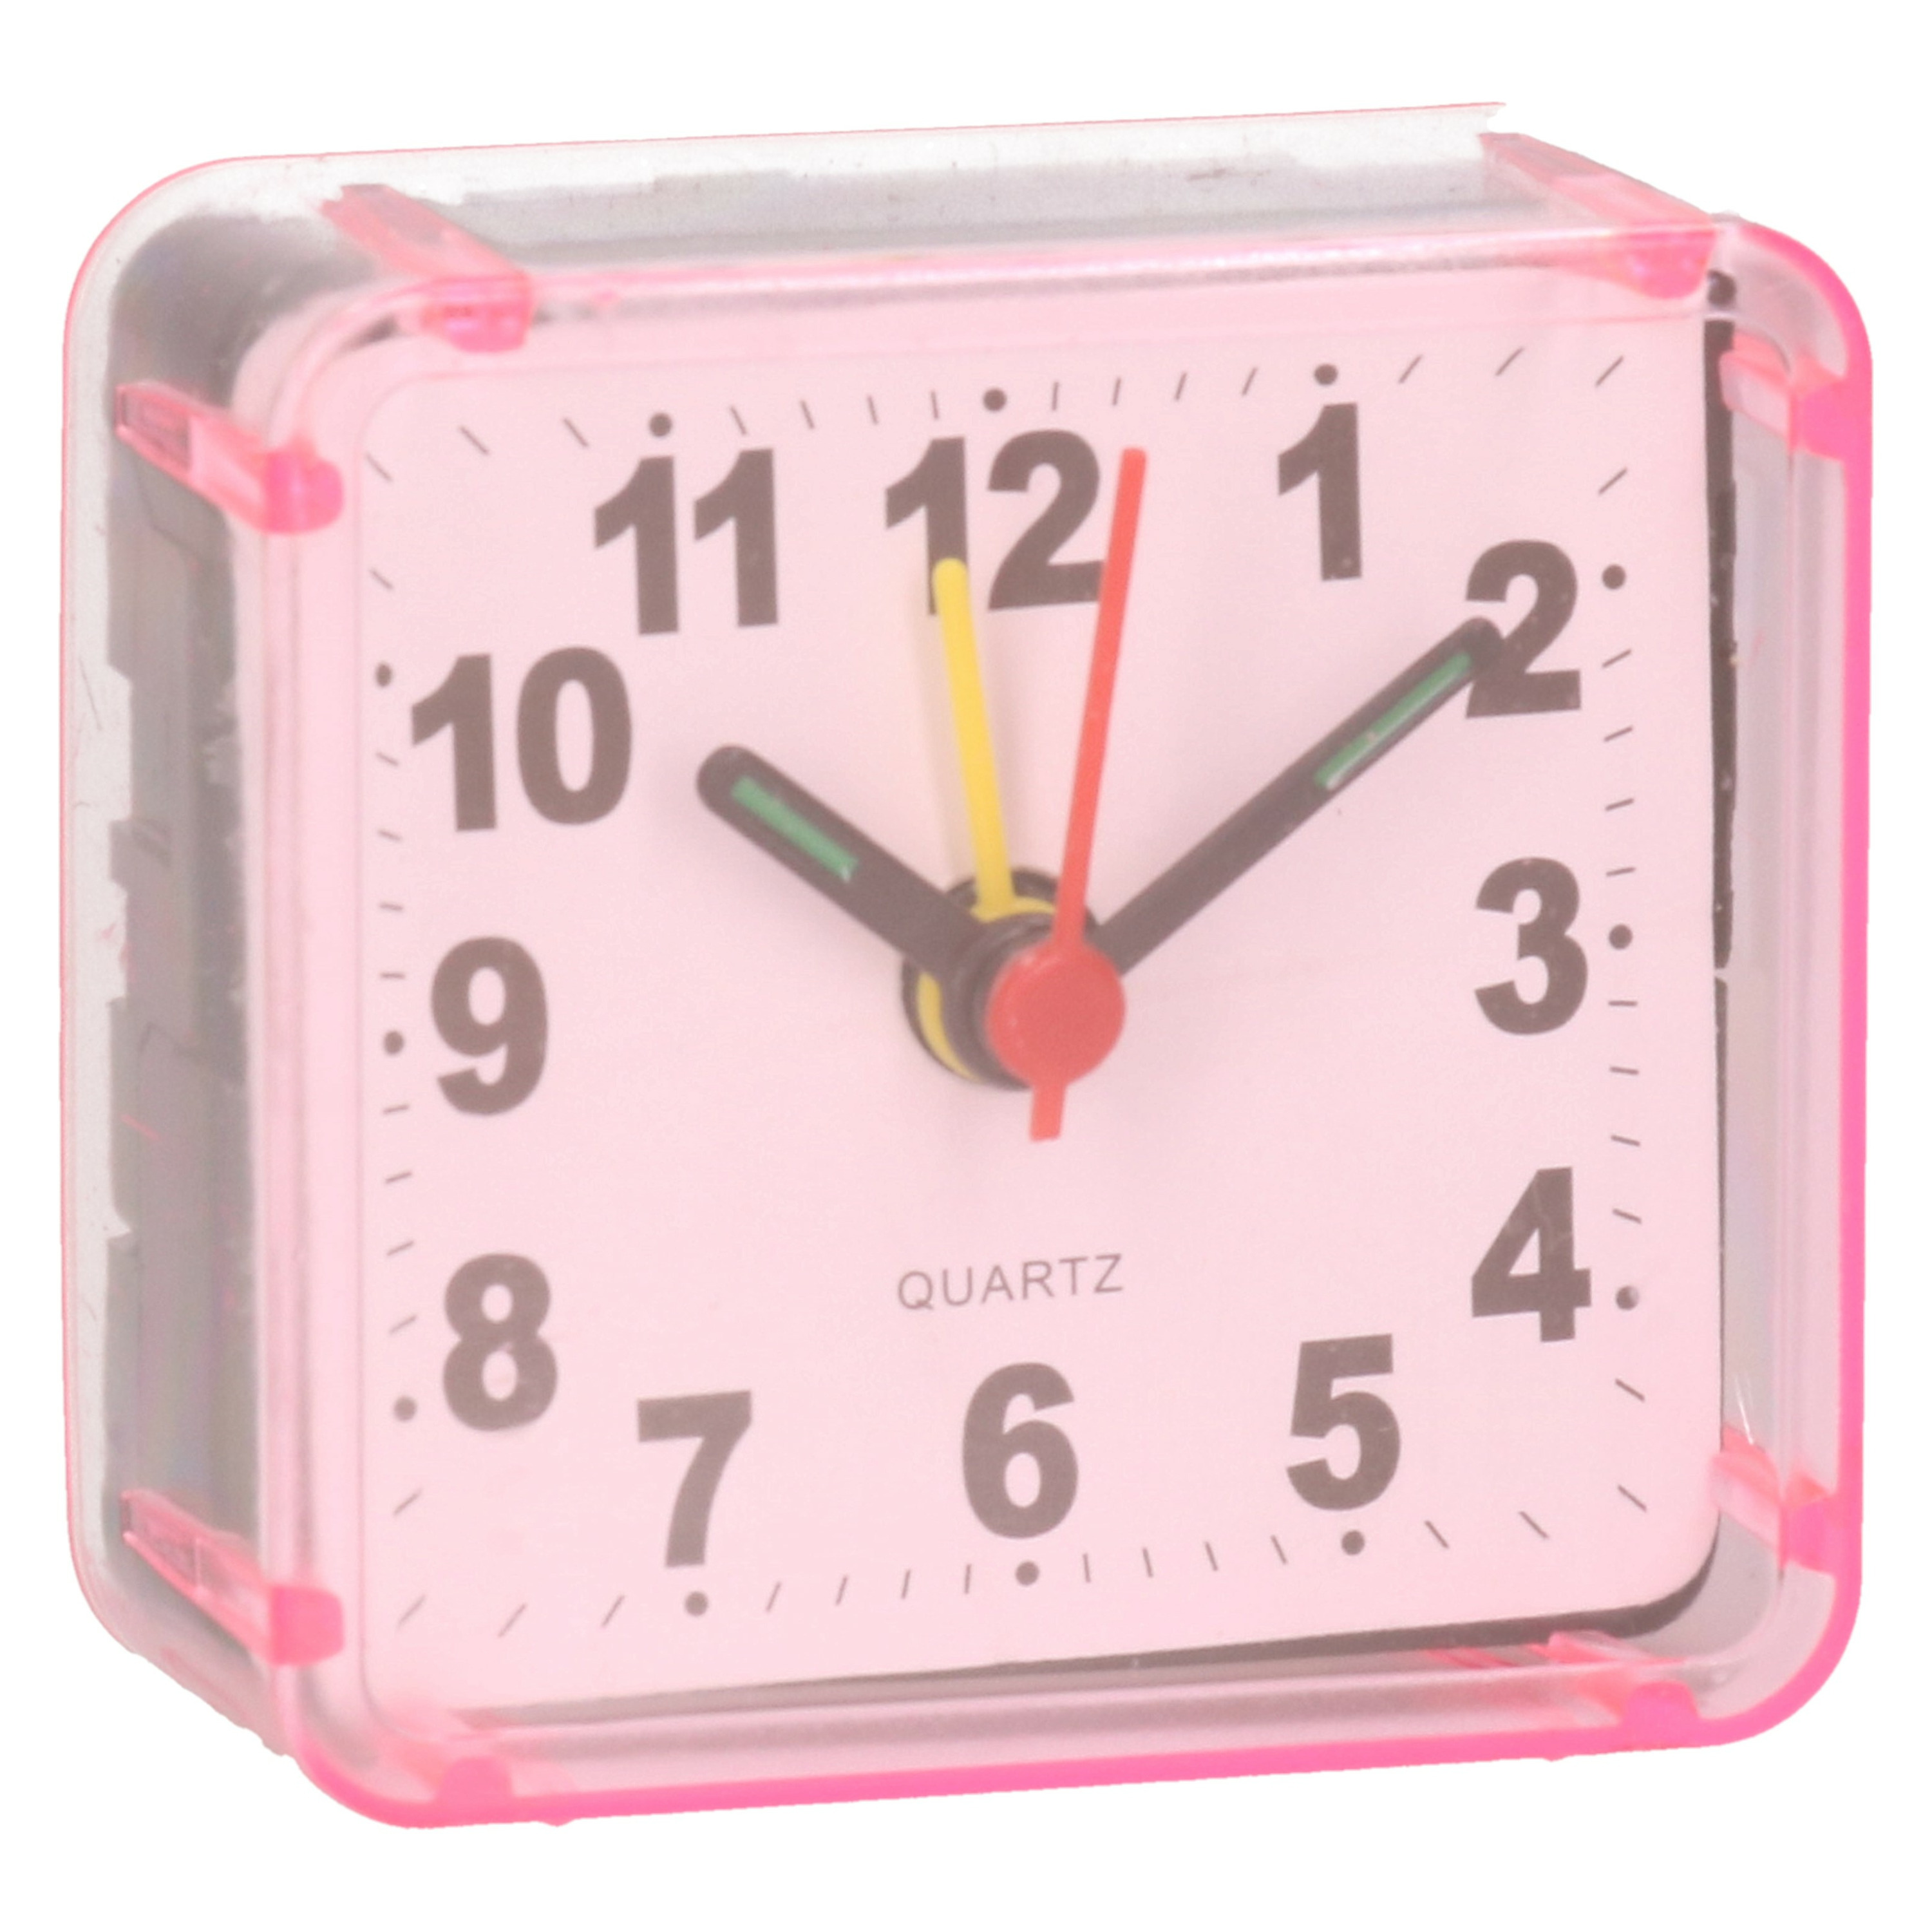 Gerimport Reiswekker/alarmklok analoog - roze - kunststof - 6 x 3 cm - klein model -